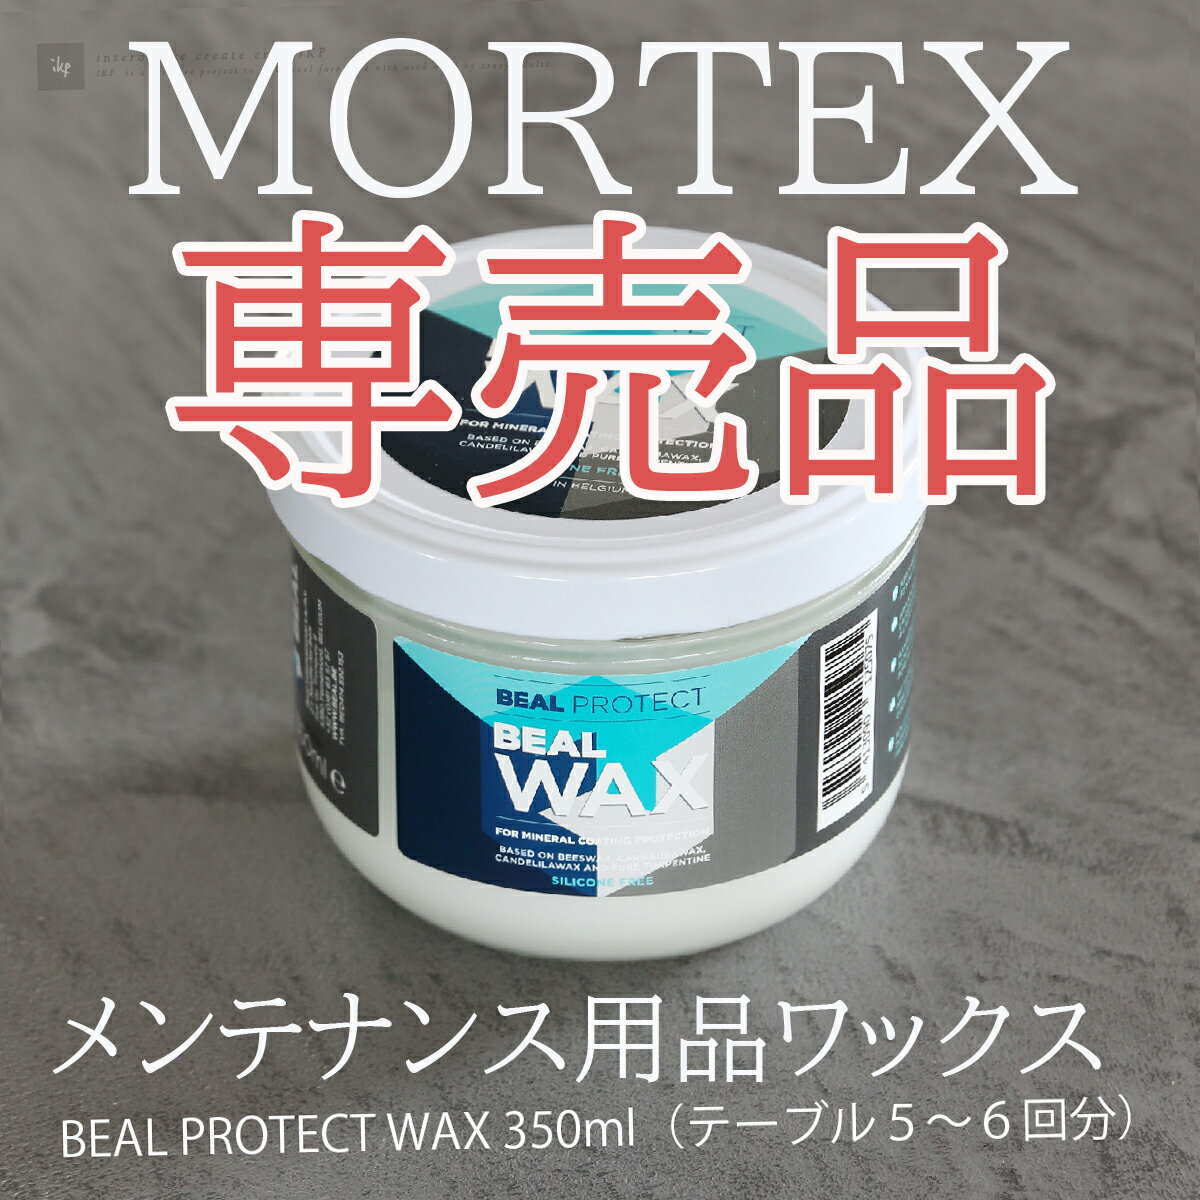 【MORTEX メンテナンス用品】保護ワックス - BEALWAX 350ML - MORTEX メンテナンス用品【送料無料】